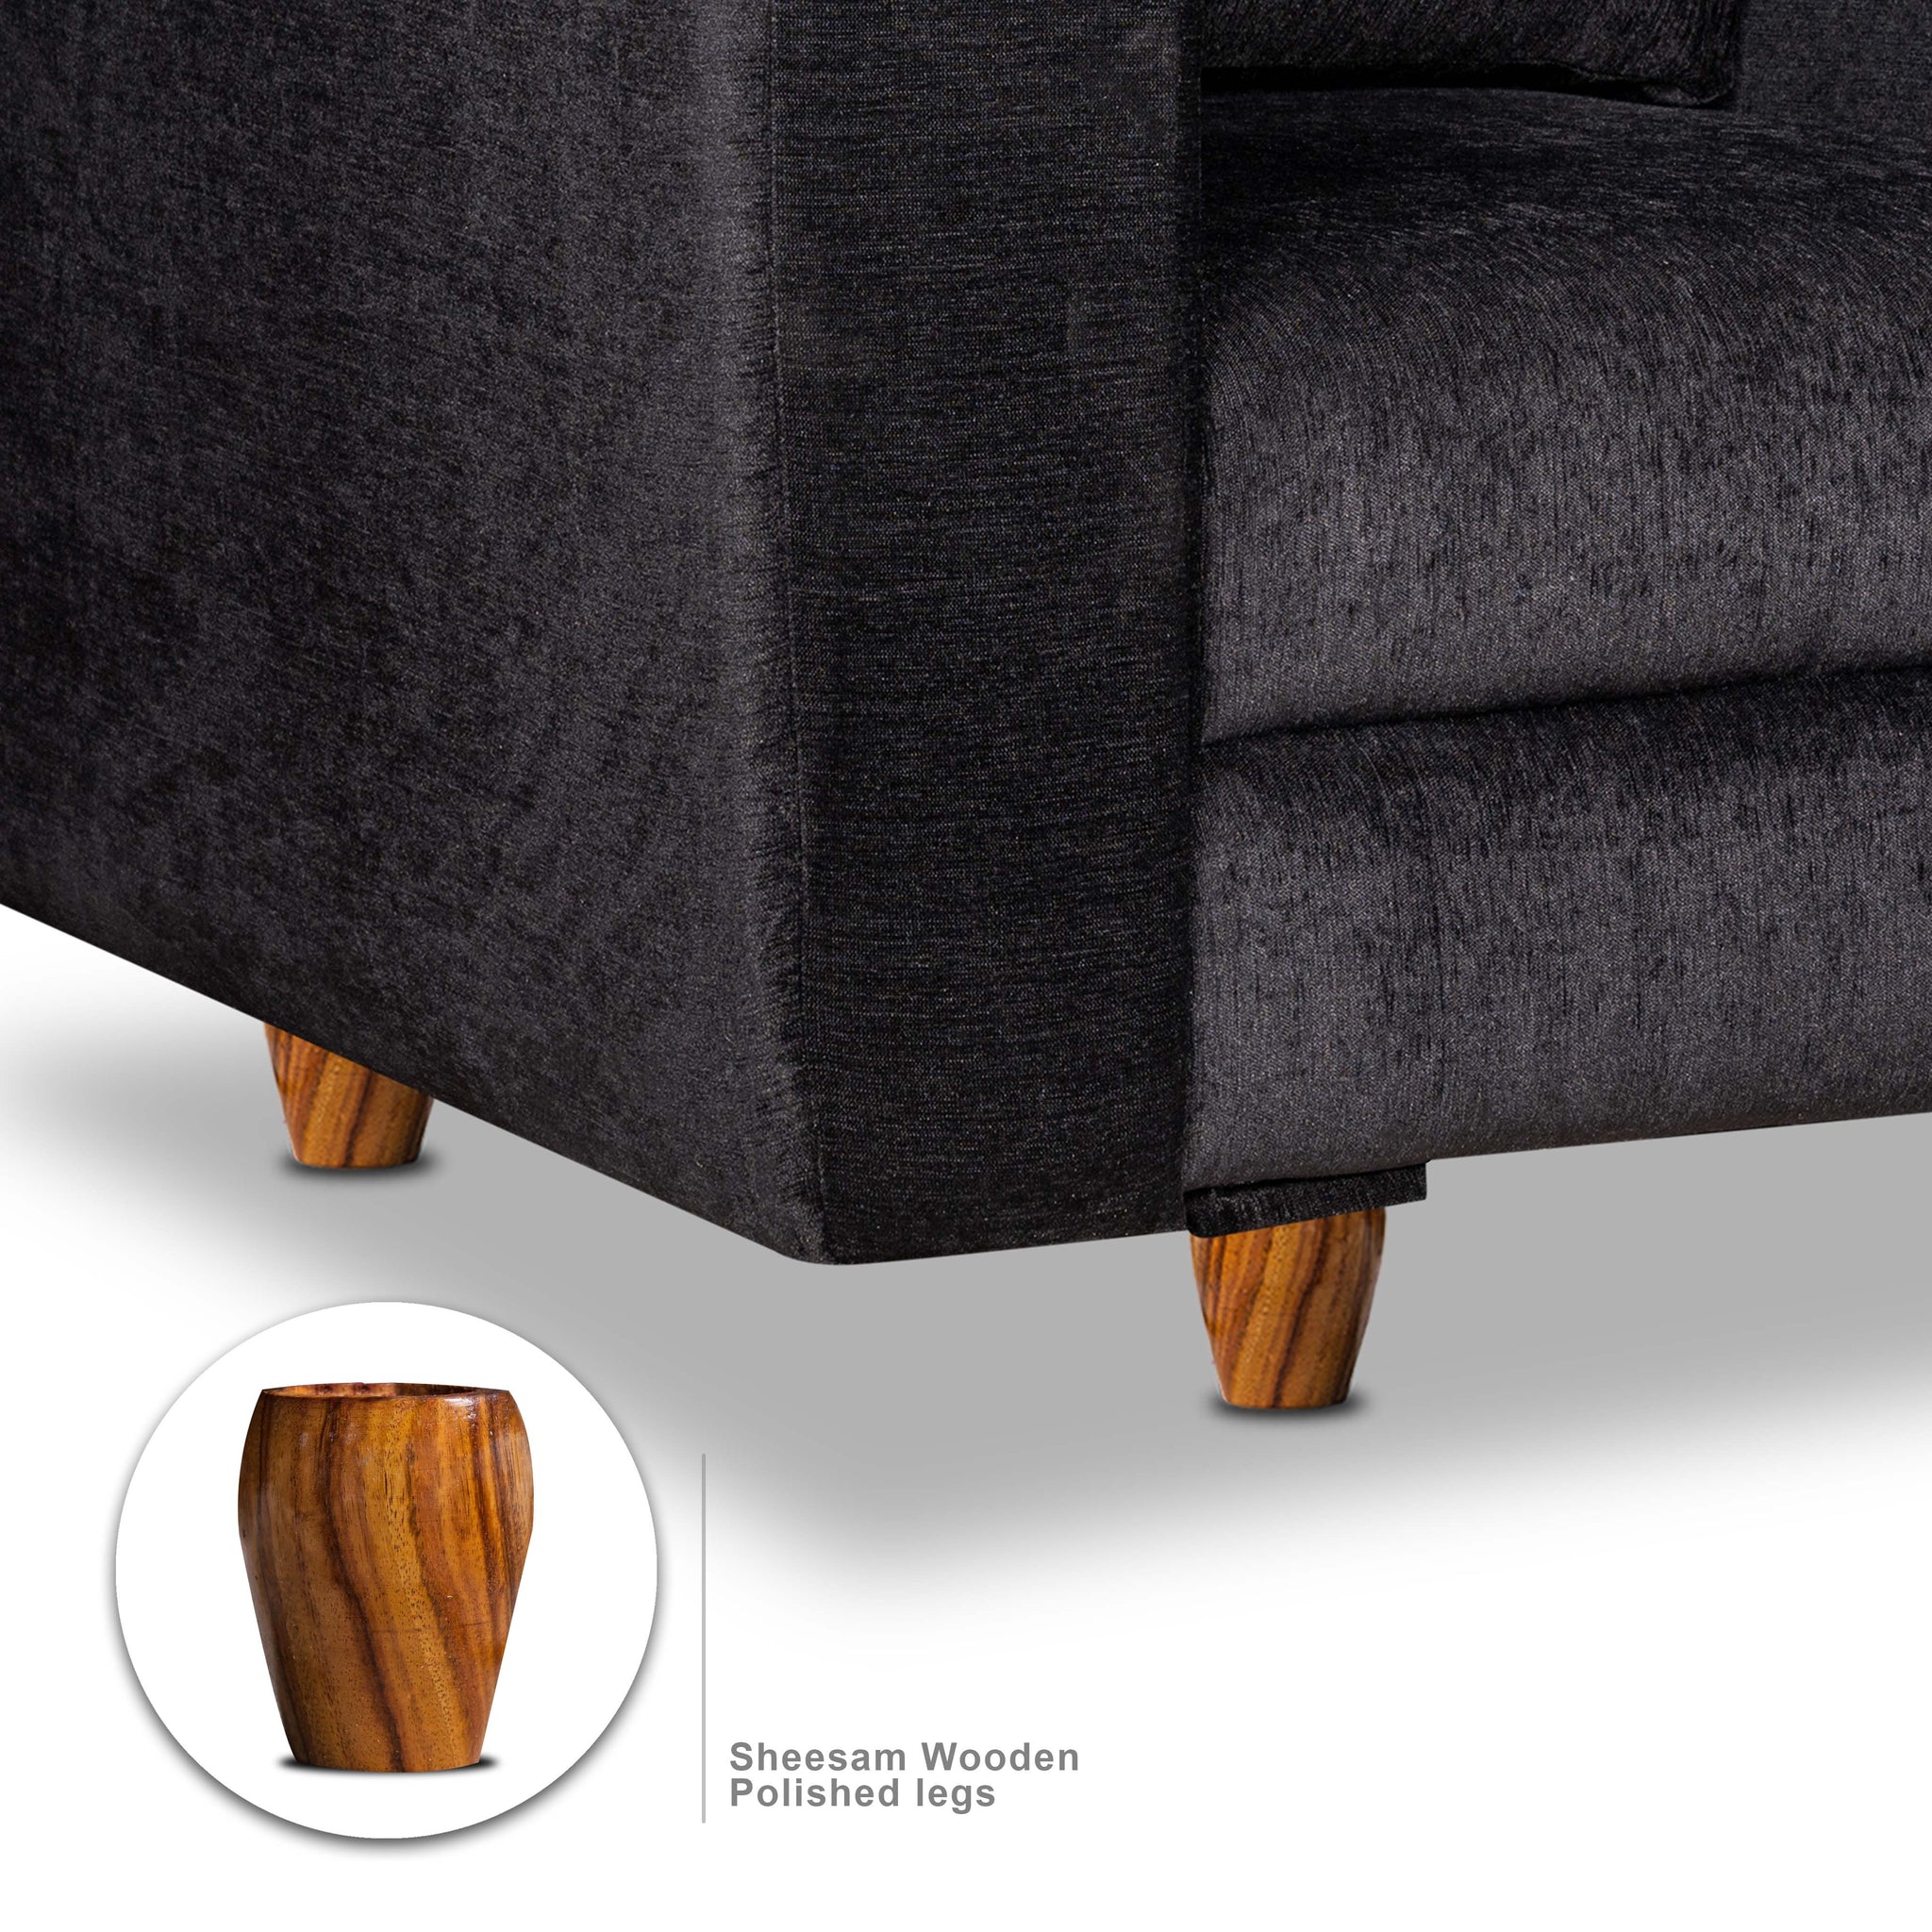 Rio 3 Seater Sofa, Chenille Molfino Fabric (Finish Color - Black)